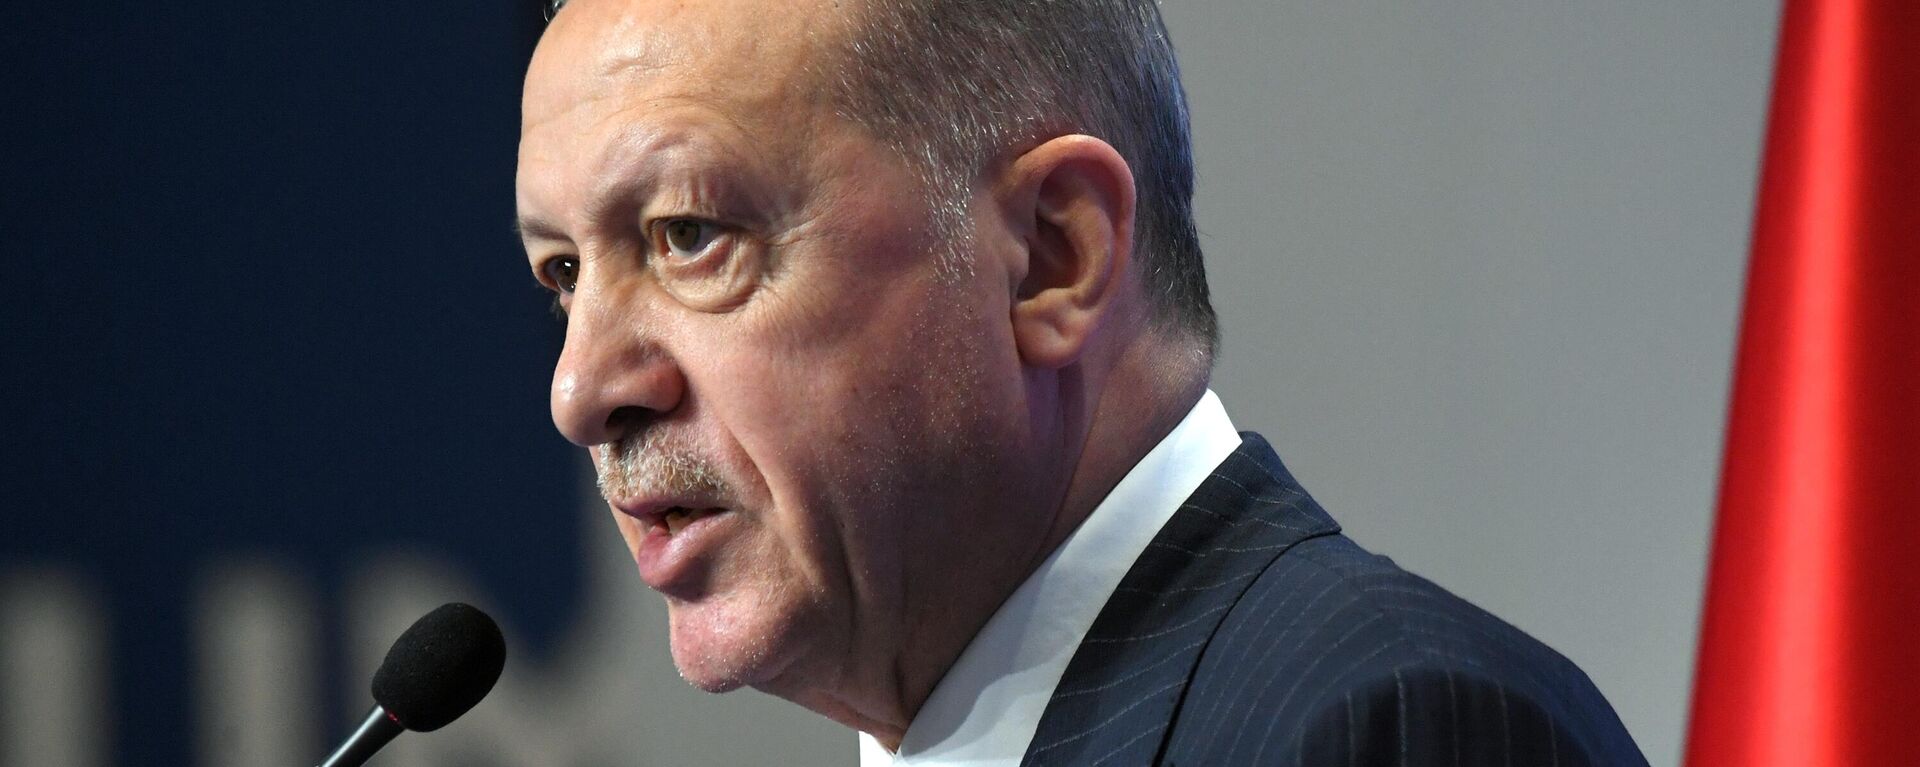 Recep Tayyip Erdogan, presidente de Turquía - Sputnik Mundo, 1920, 25.12.2022